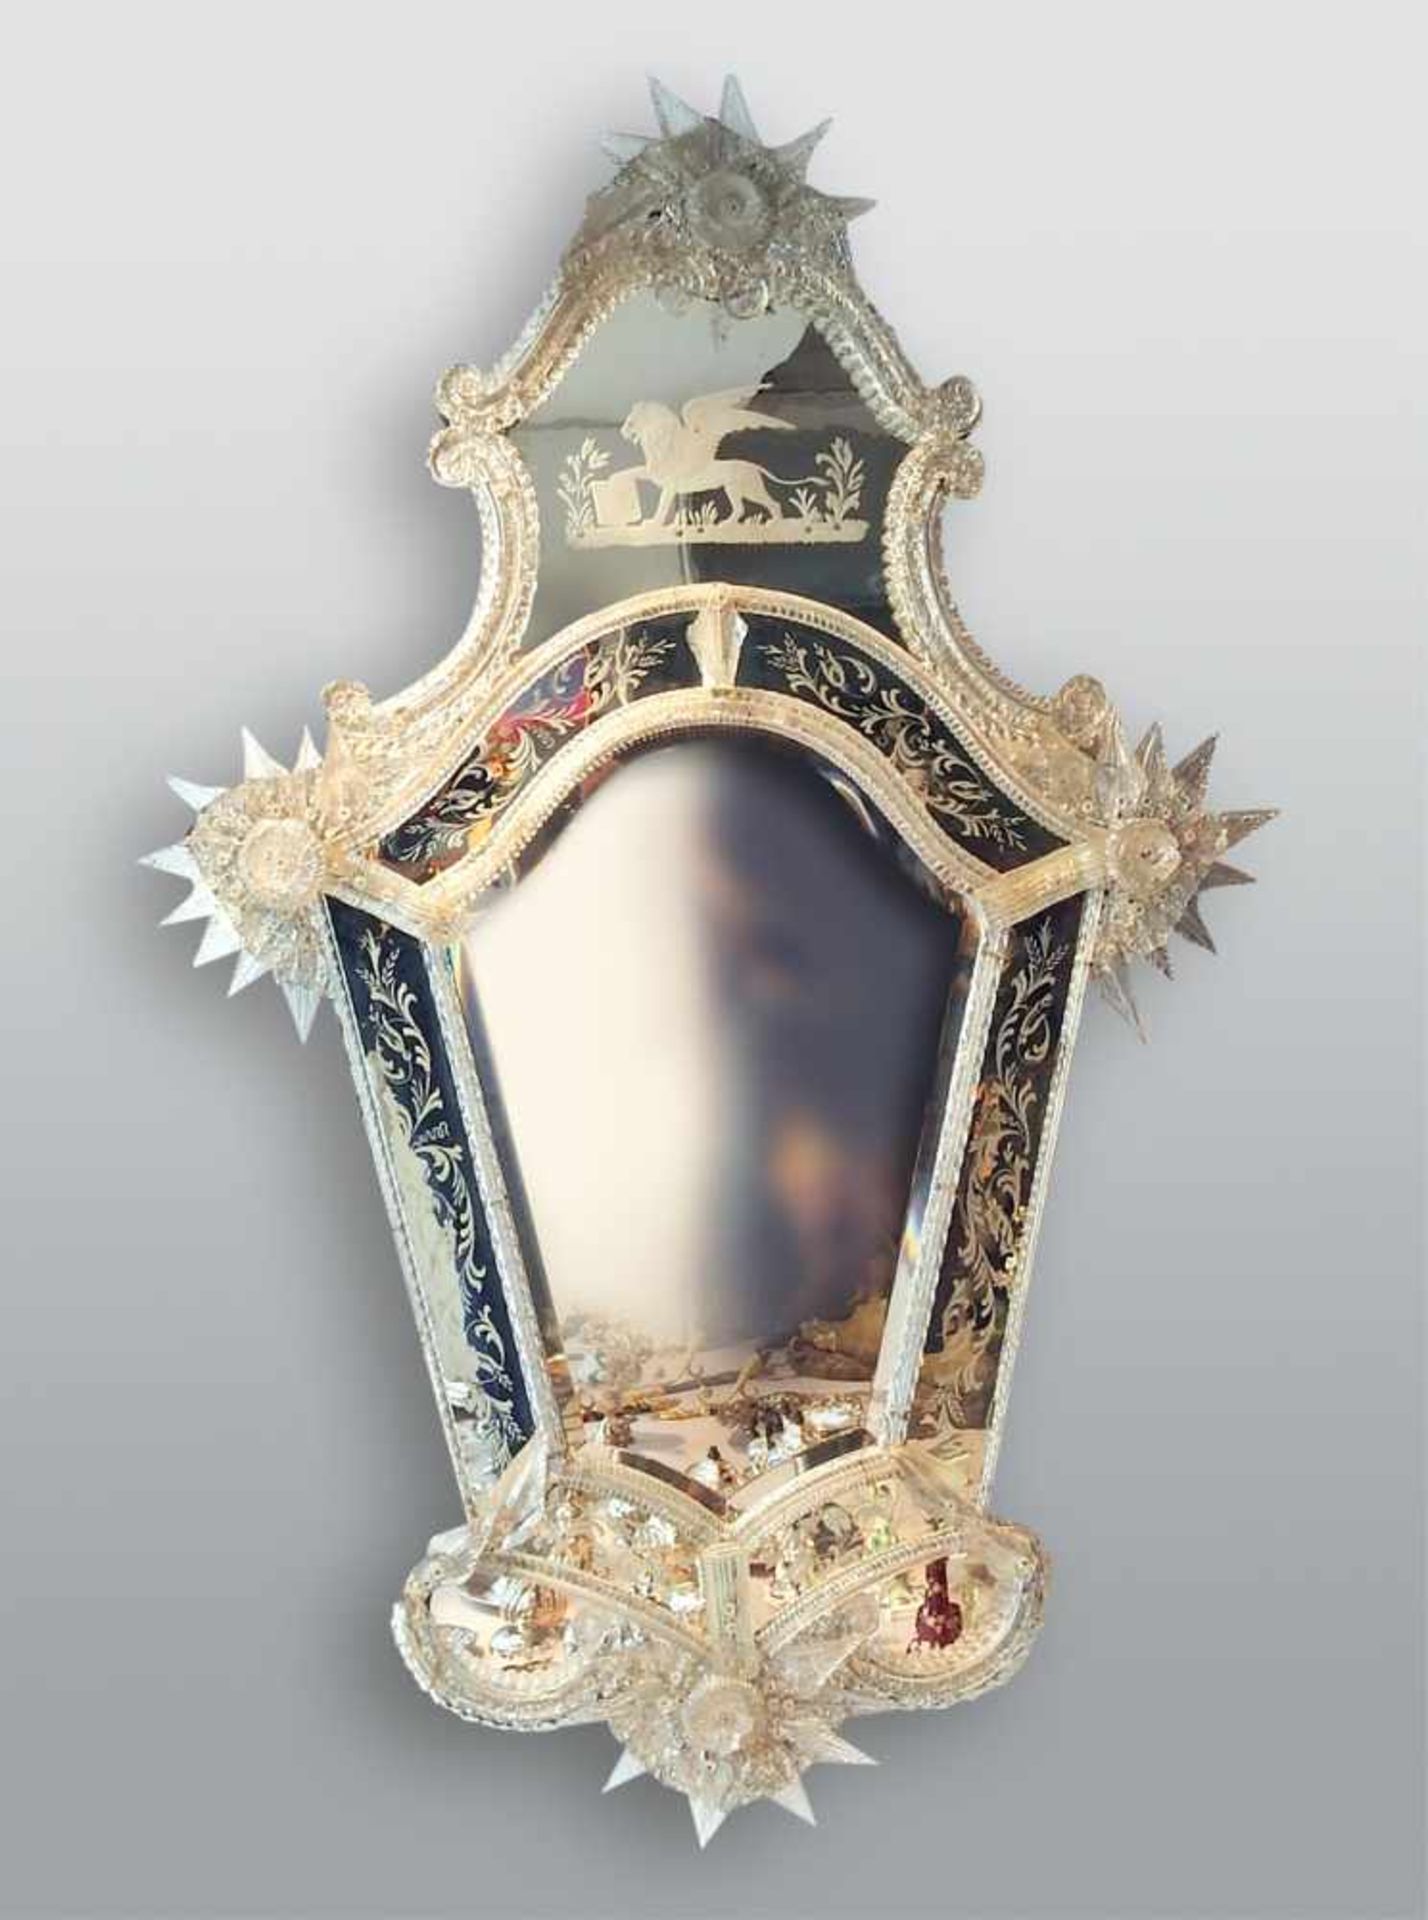 Feinverzierter Spiegel Muranoglas, Rand verziert mit Blumenmuster, vergoldeten Details und